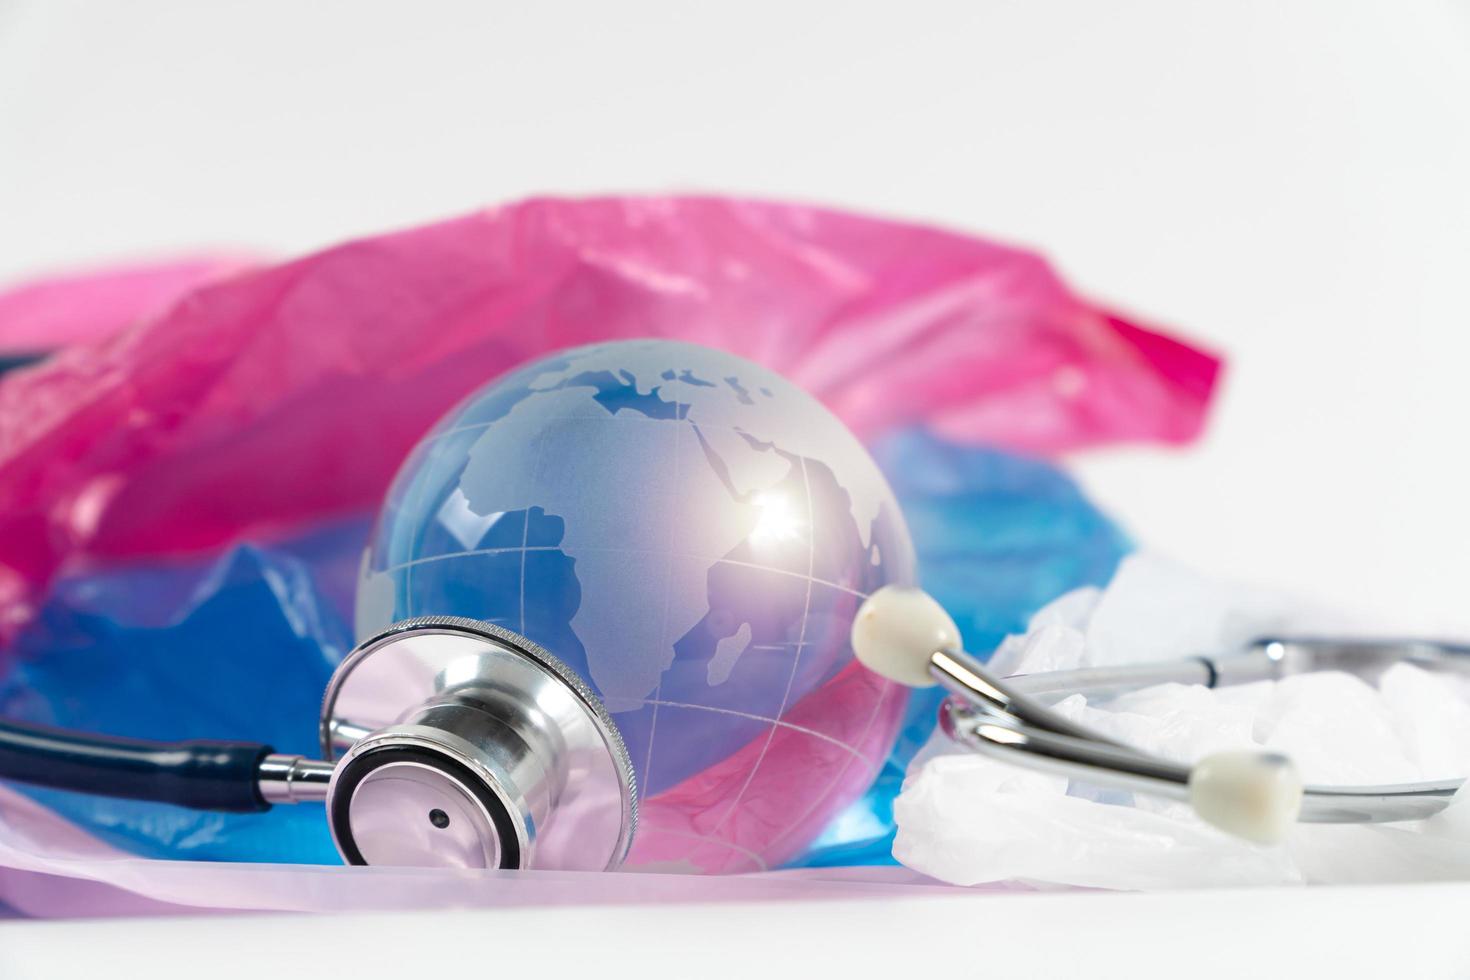 kristallen bol en stethoscoop op plastic zak. plastic afval stroomt over de wereld, de wereld is ziek, opwarming van de aarde en klimaatverandering. foto